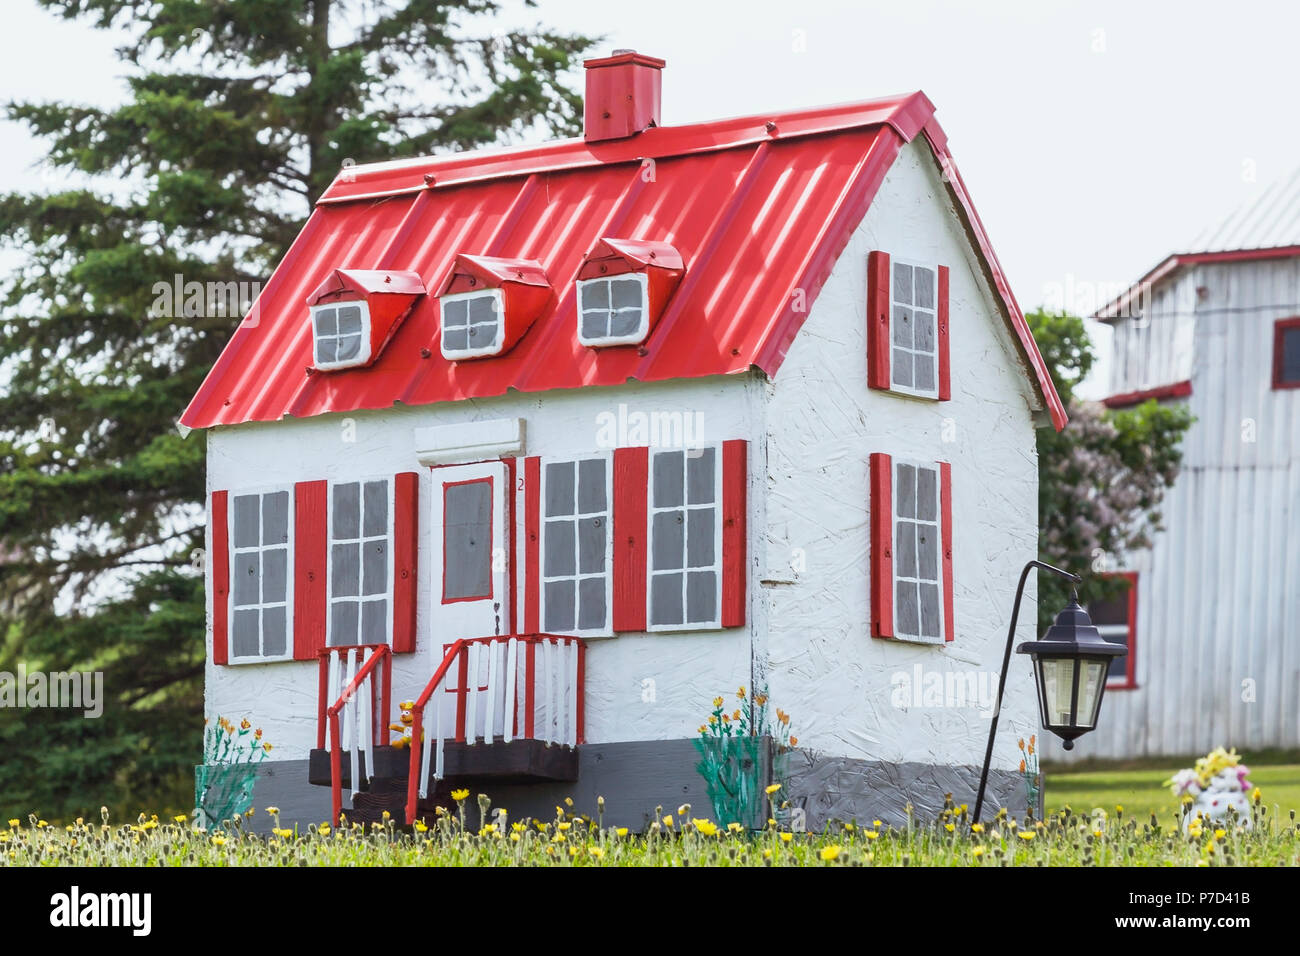 Weiß mit roter Zierleiste miniatur Reproduktion eines alten Canadiana cottage Style home Fassade in einem Feld von gelben Löwenzahn Blumen Stockfoto